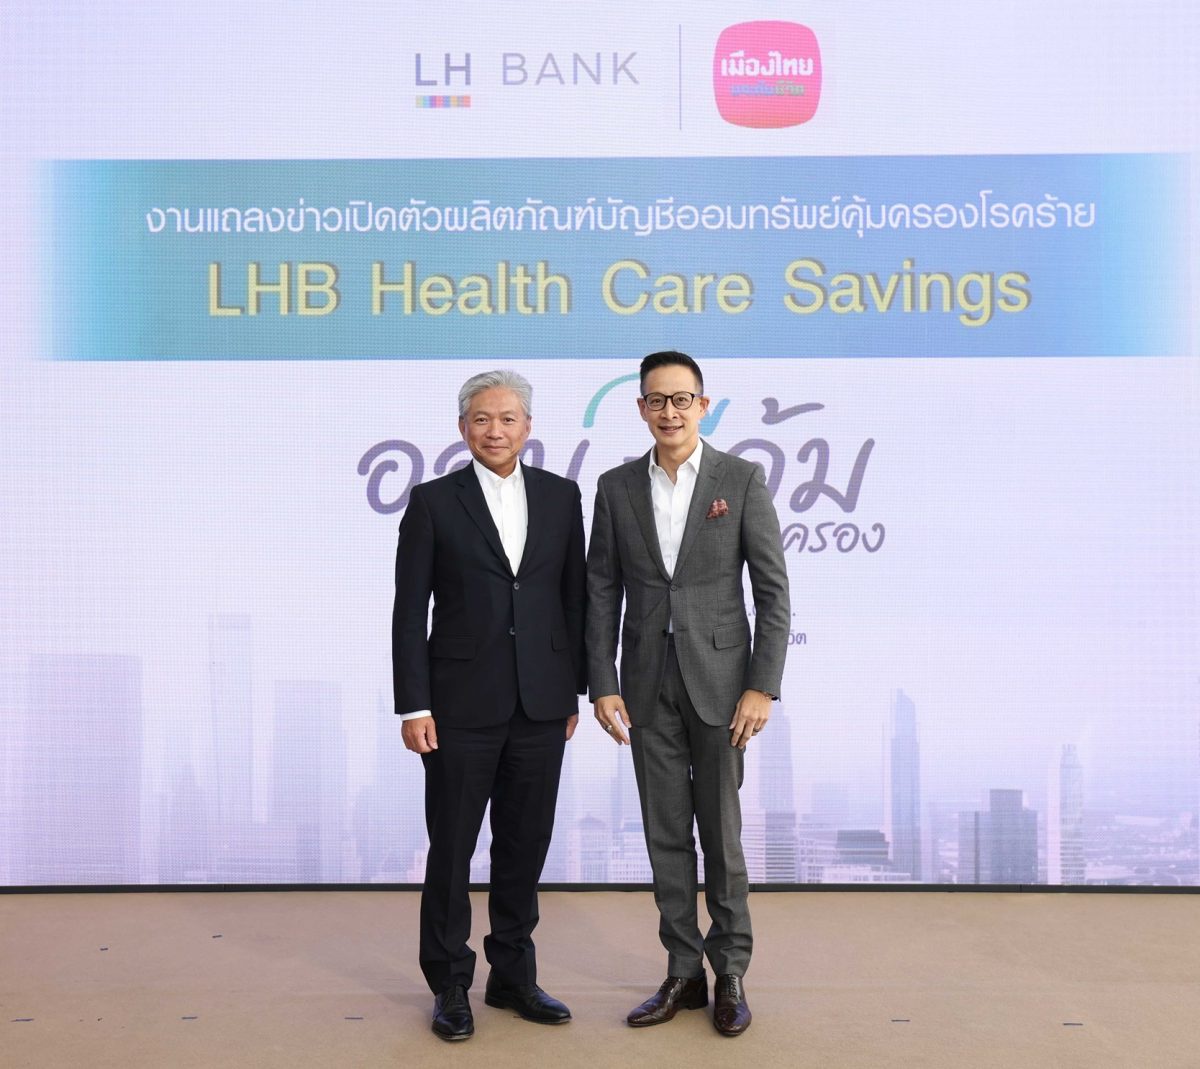 LH Bank จับมือ MTL ออกผลิตภัณฑ์เงินฝากออมทรัพย์ที่ให้มากกว่าดอกเบี้ย ที่คุ้มครองโรคร้ายสูงสุด 30 โรค (LHB Health Care Savings) เจอ จ่าย จริง สูงสุด 1 ล้านบาท